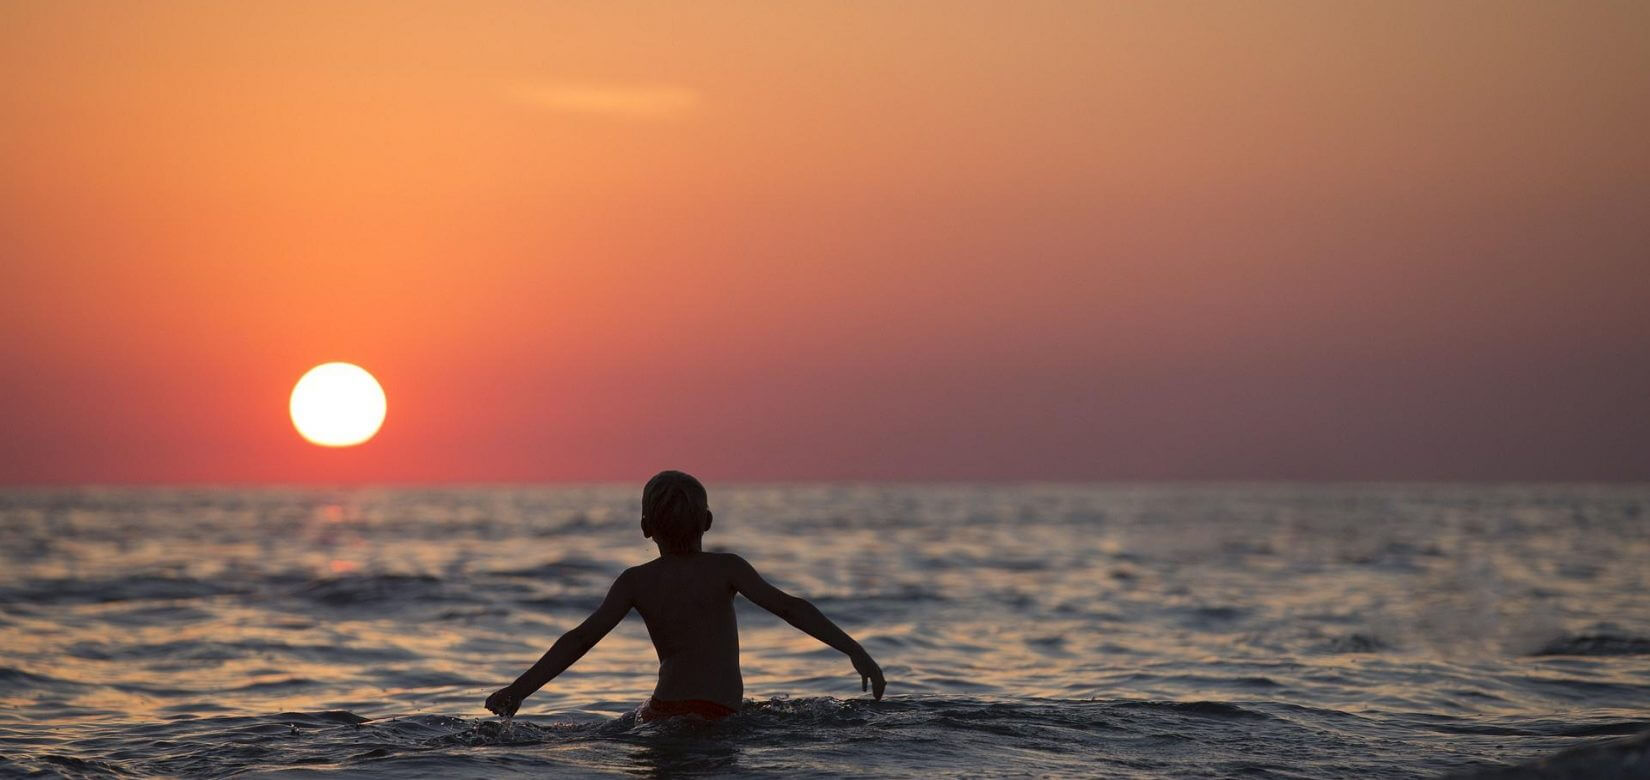 Το μπάνιο στη θάλασσα αποδείχθηκε μοιραίο: Πνίγηκε 6χρονο αγόρι στην Αλεξανδρούπολη